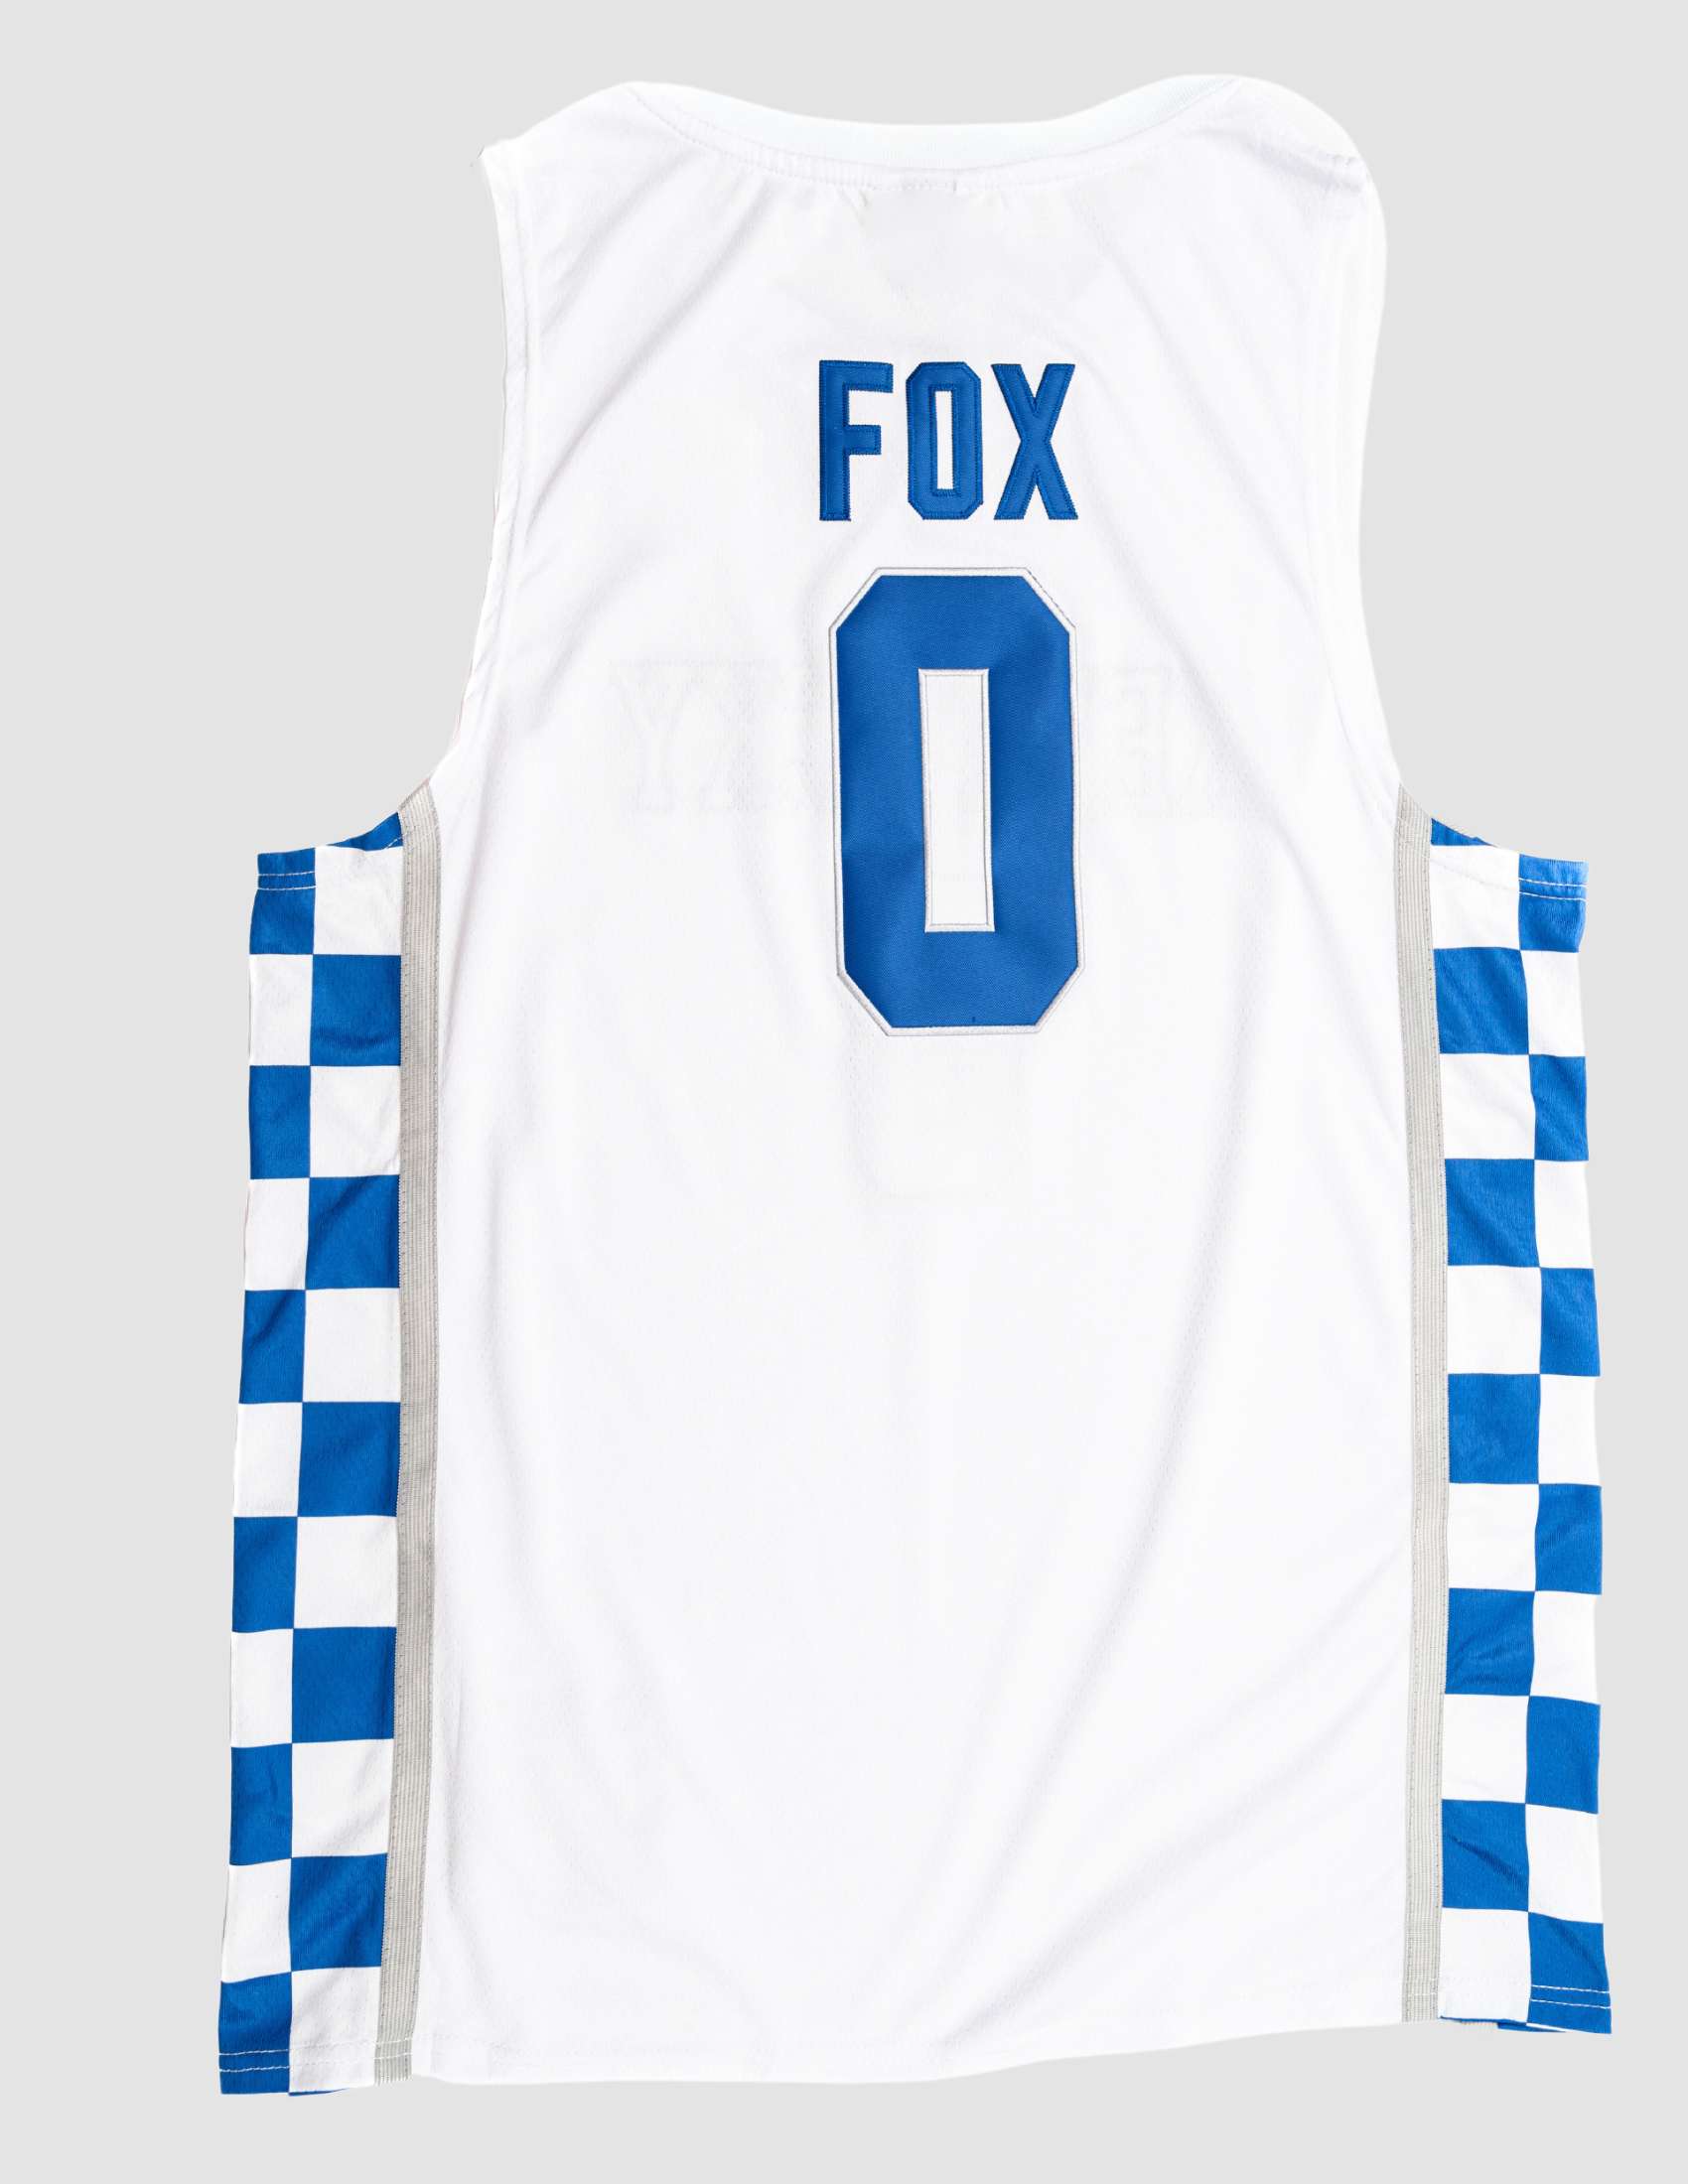 De'Aaron Fox Jersey, De'Aaron Fox Shirts, Apparel